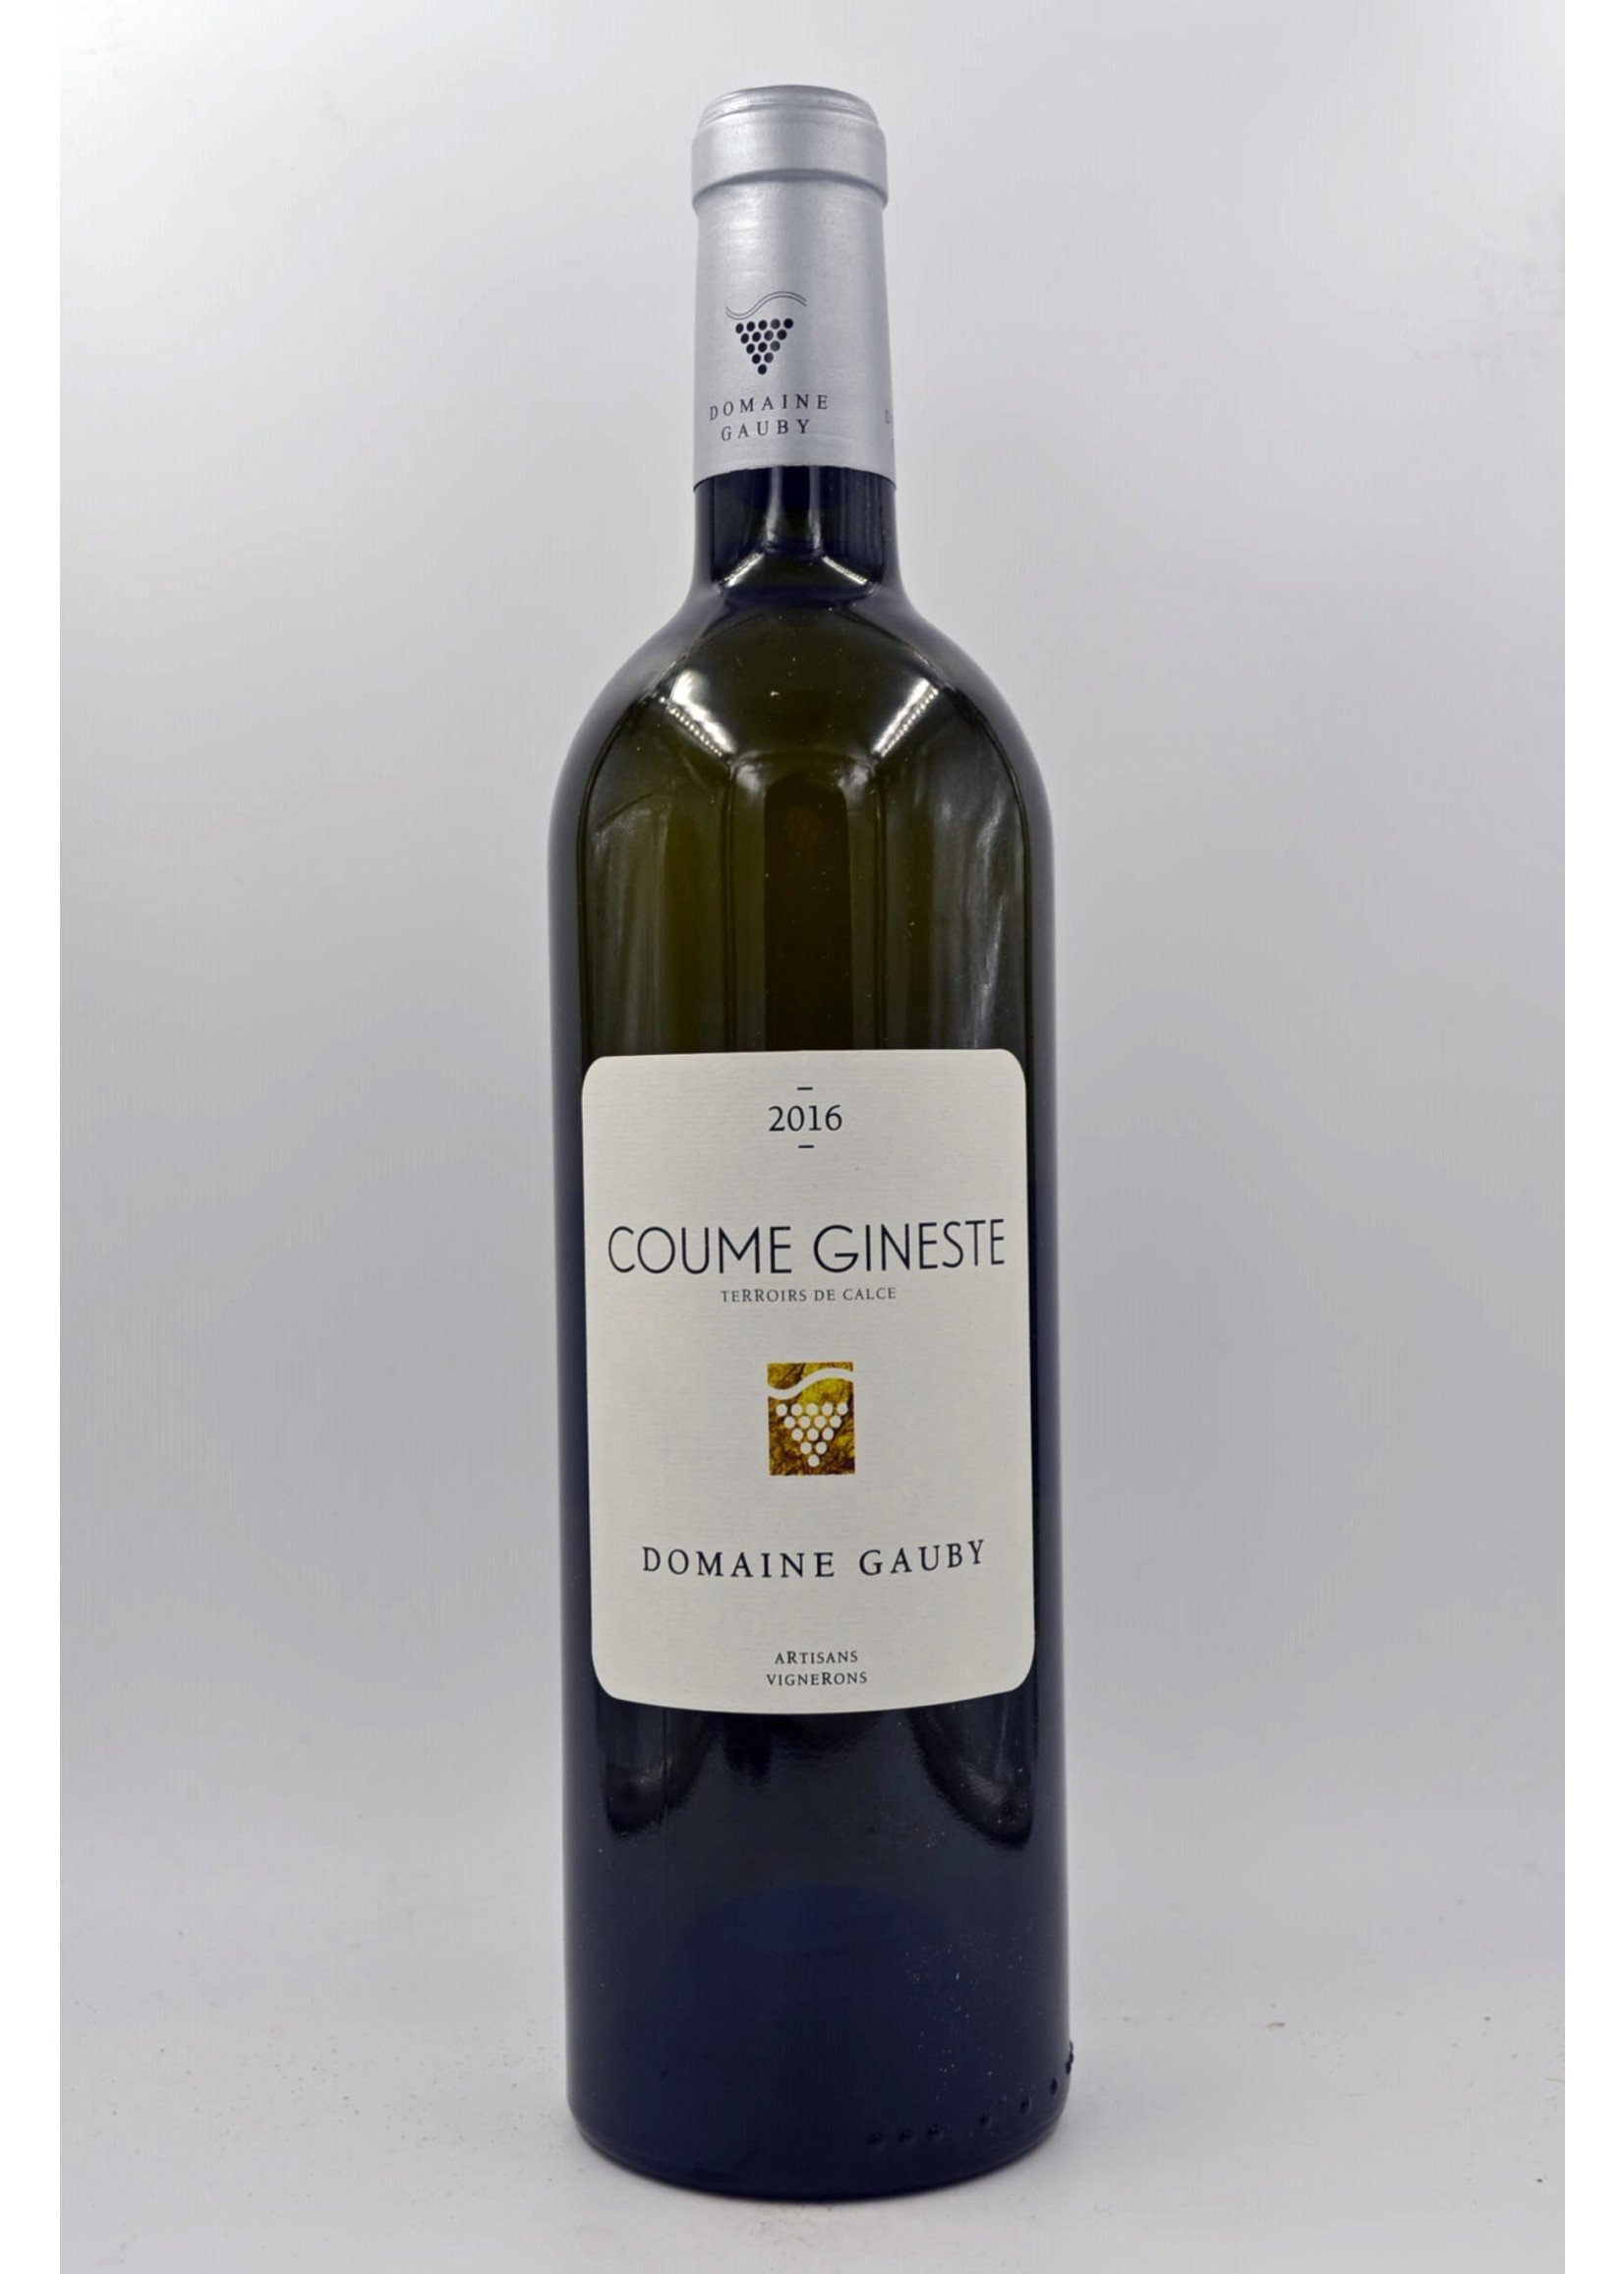 2016 Coume Gineste blanc Domaine Gauby